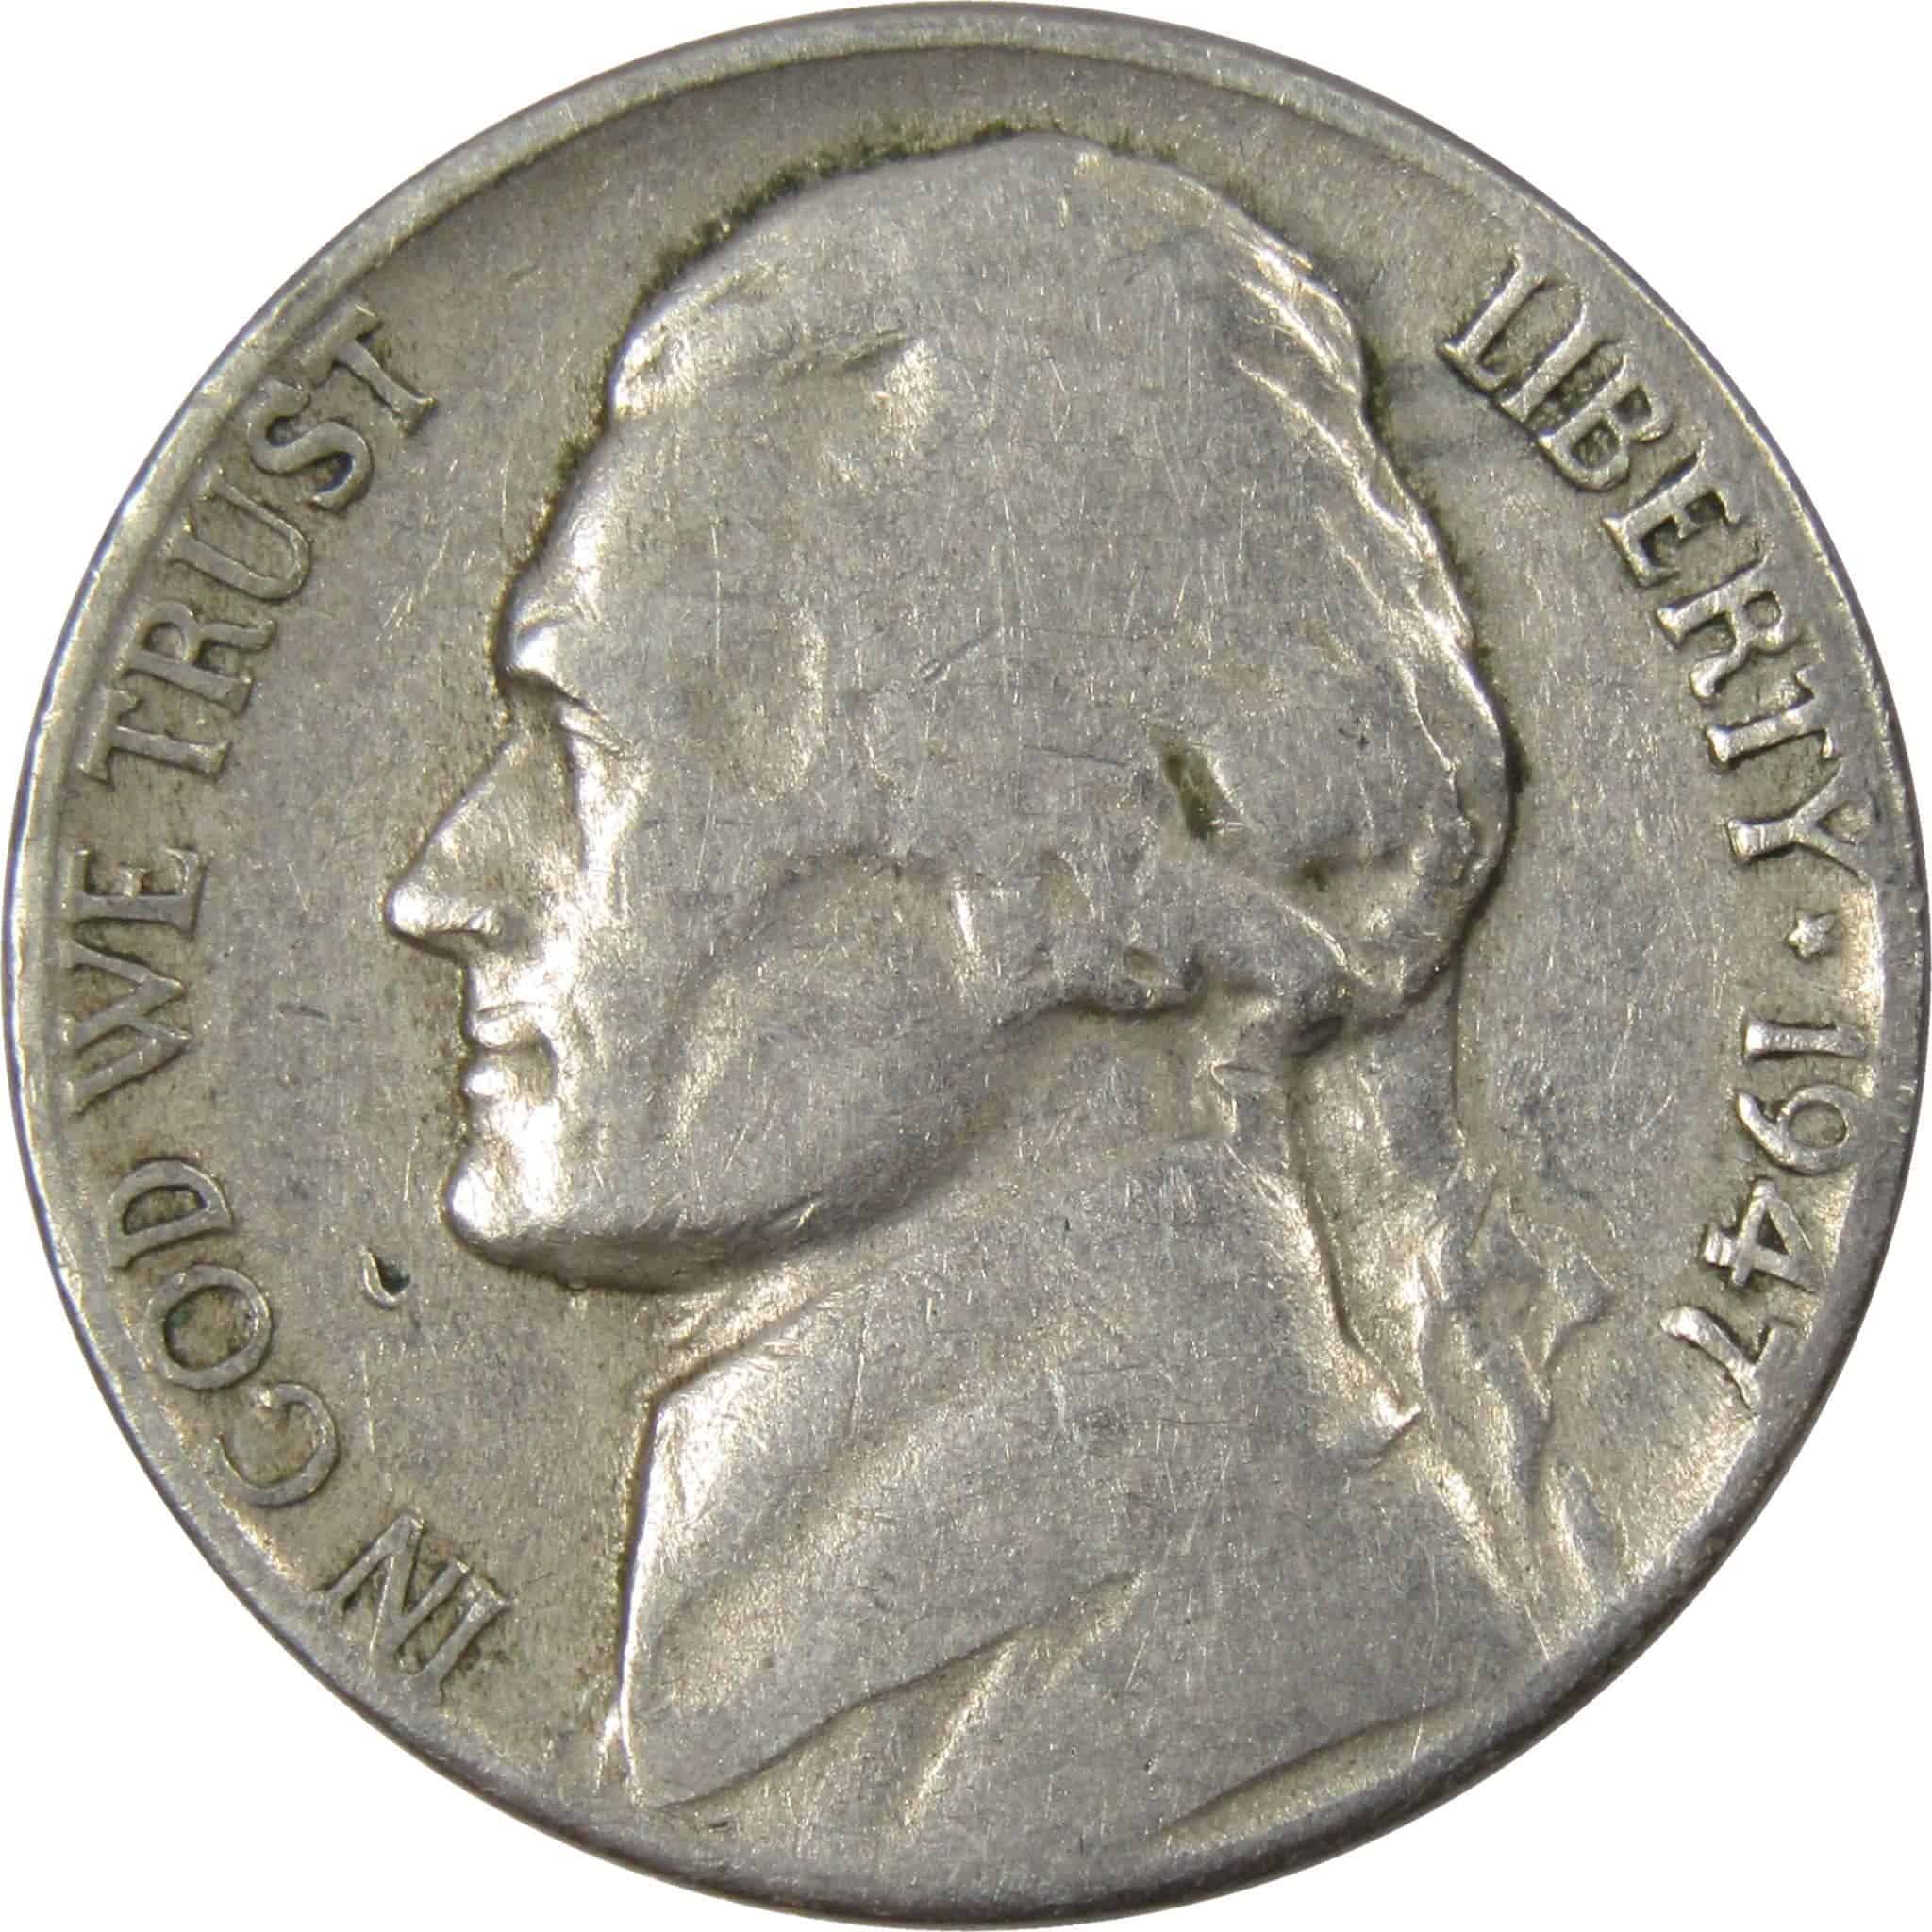 1947 nickel value